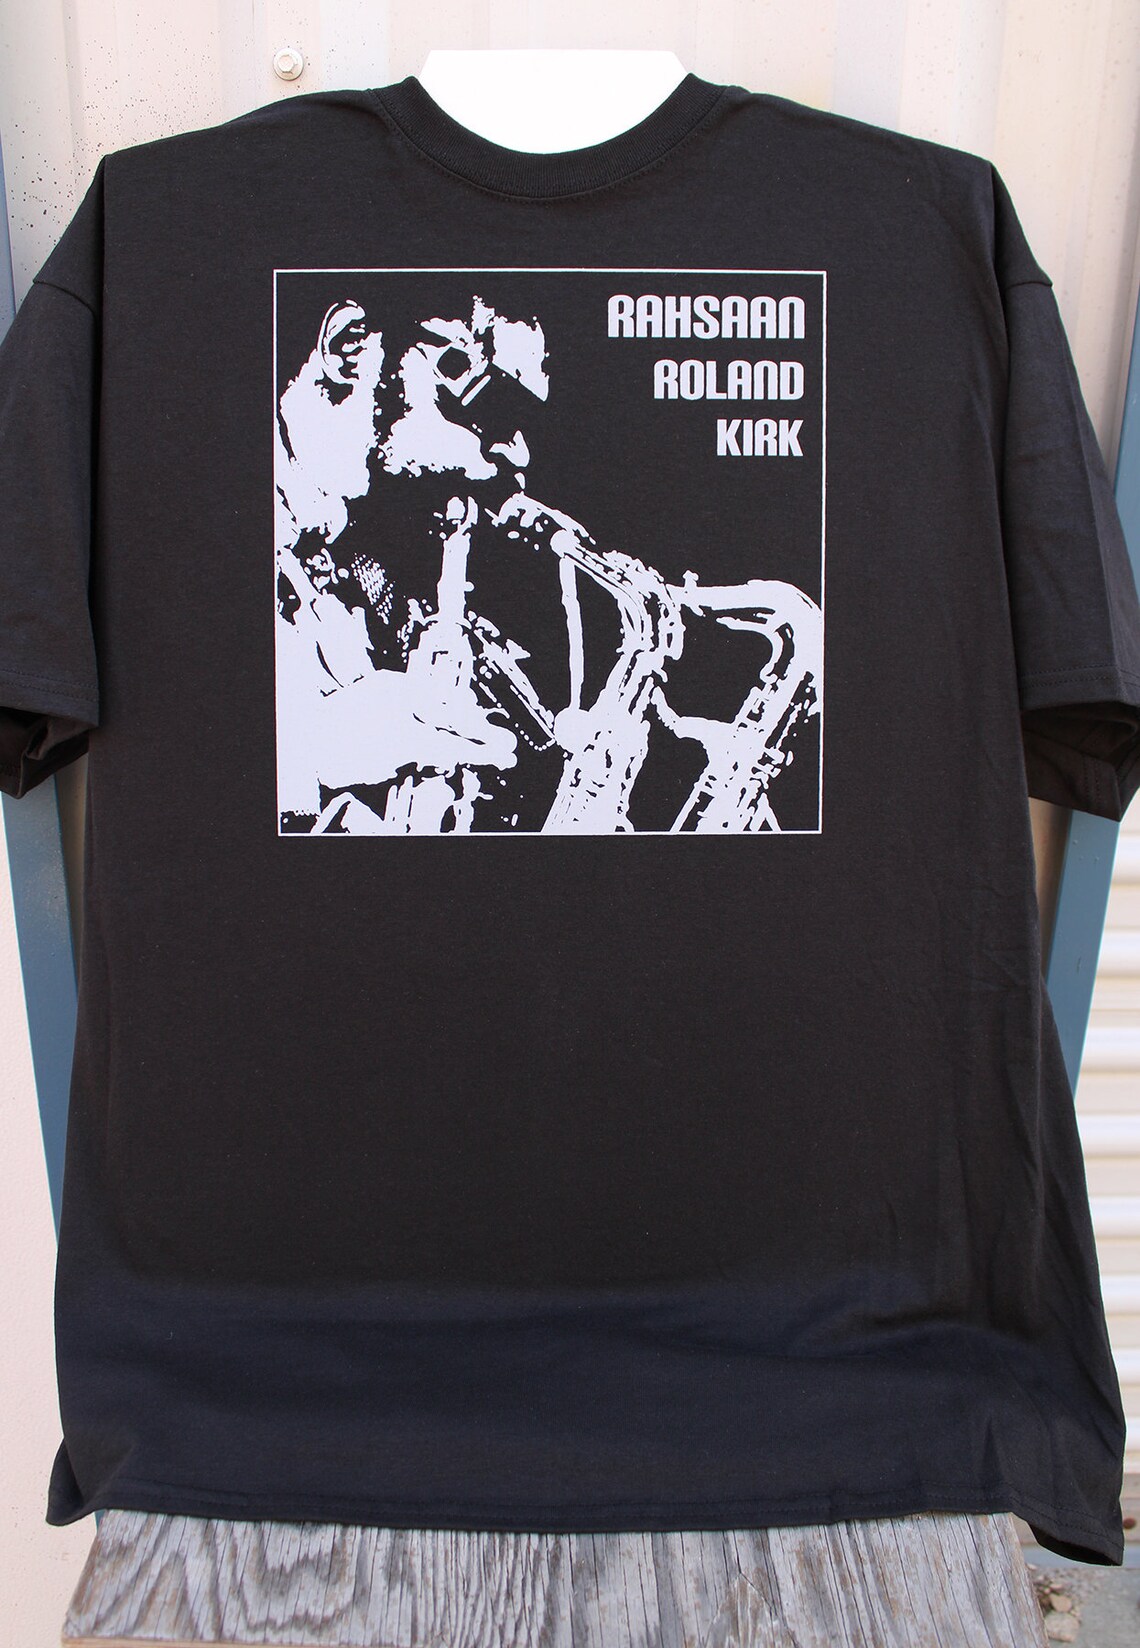 Rahsaan Roland Kirk T shirt | Etsy